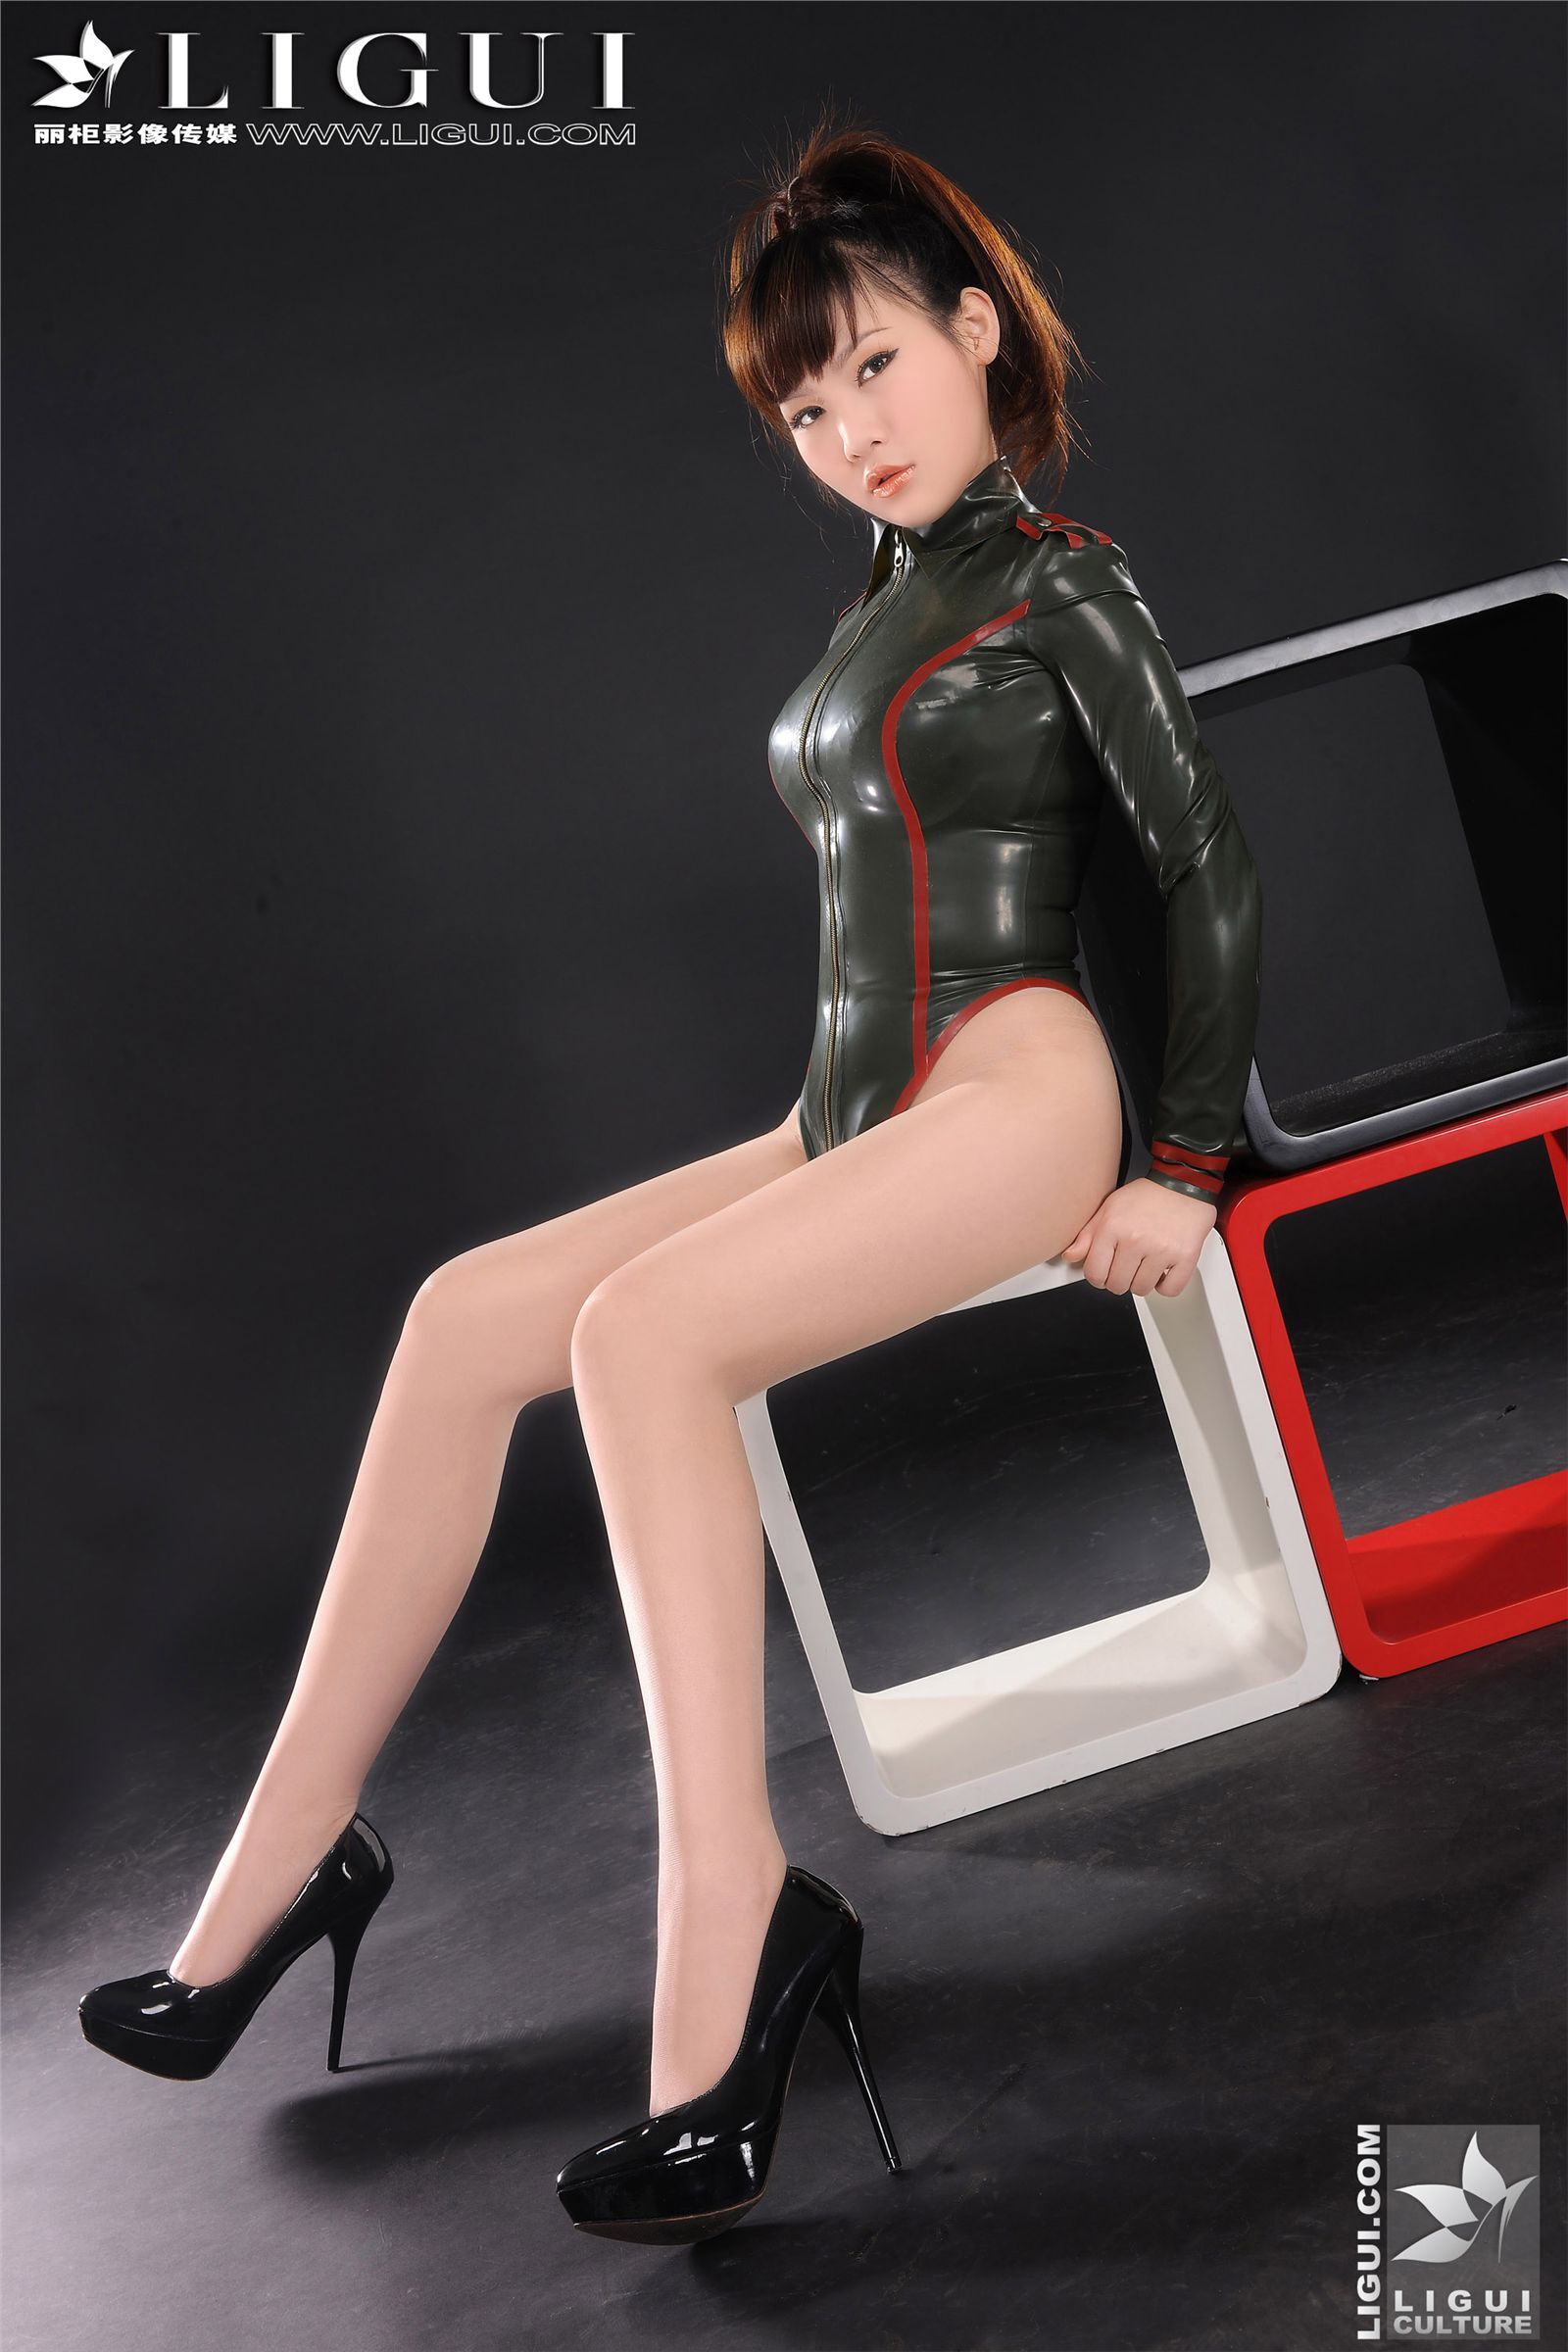 [Ligui] 丽柜 2011-12-30 新款性感女軍服 (上) - Model 文静